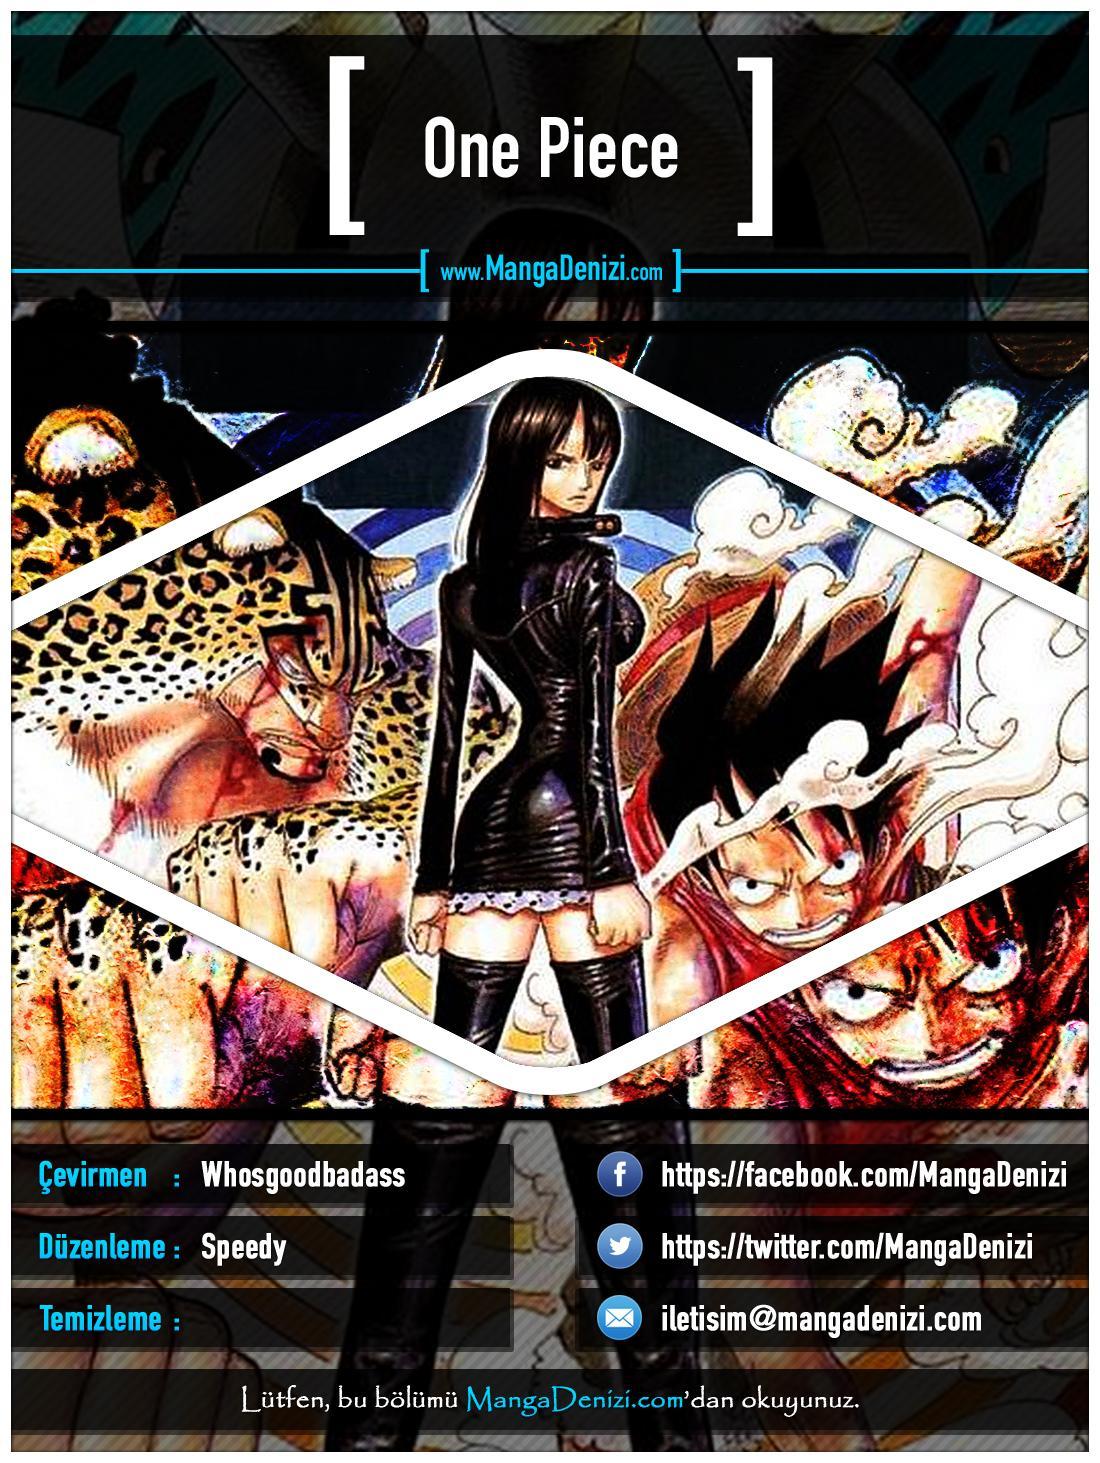 One Piece [Renkli] mangasının 0324 bölümünün 1. sayfasını okuyorsunuz.